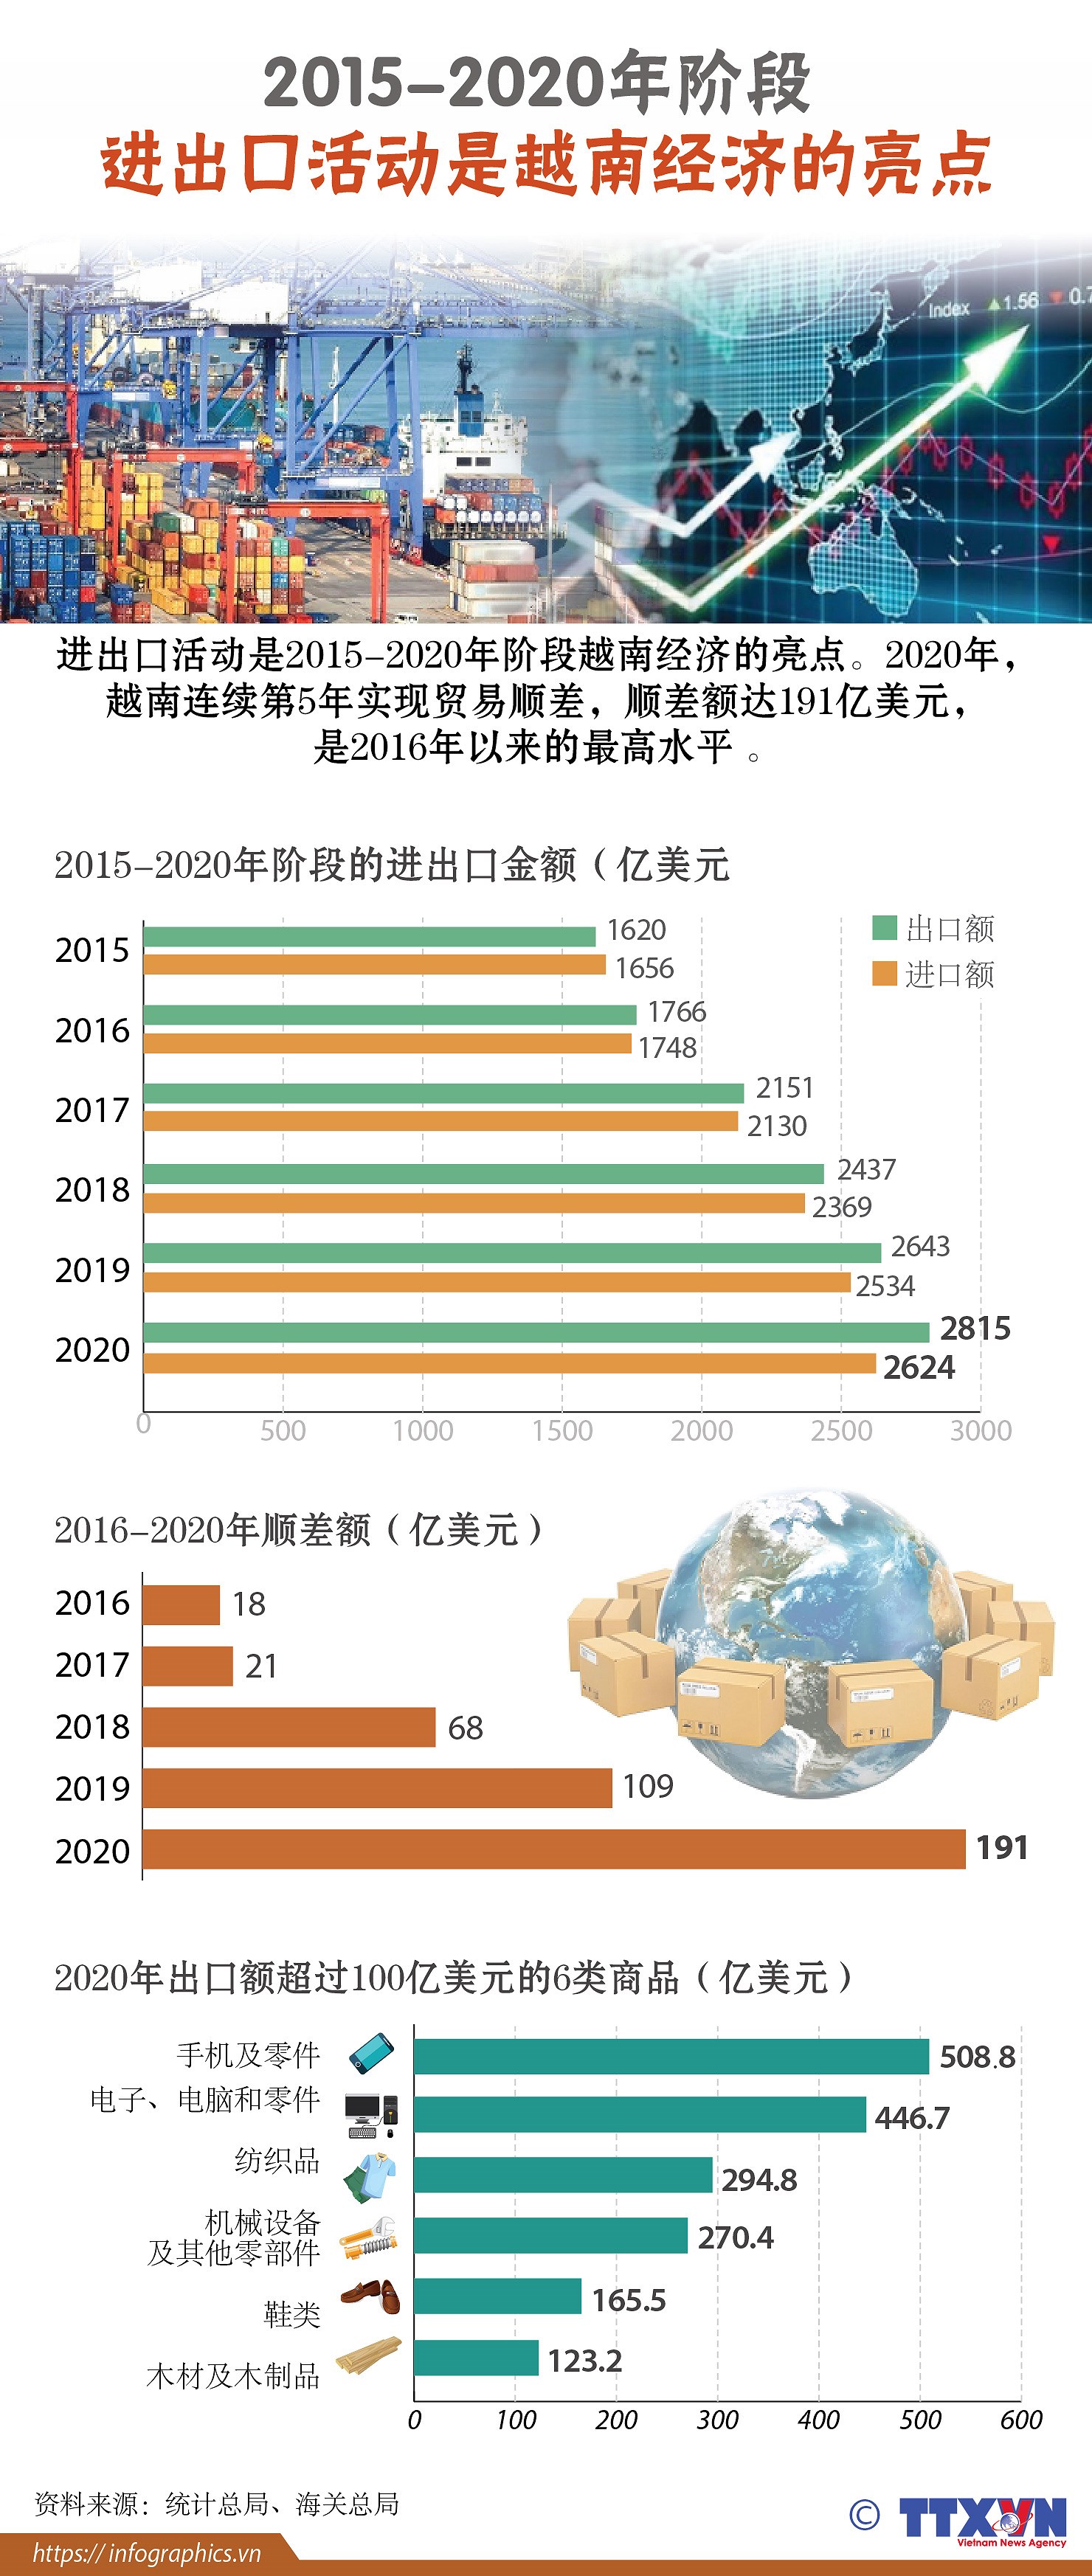 图表新闻：2015-2020年阶段进出口活动是越南经济的亮点 hinh anh 1